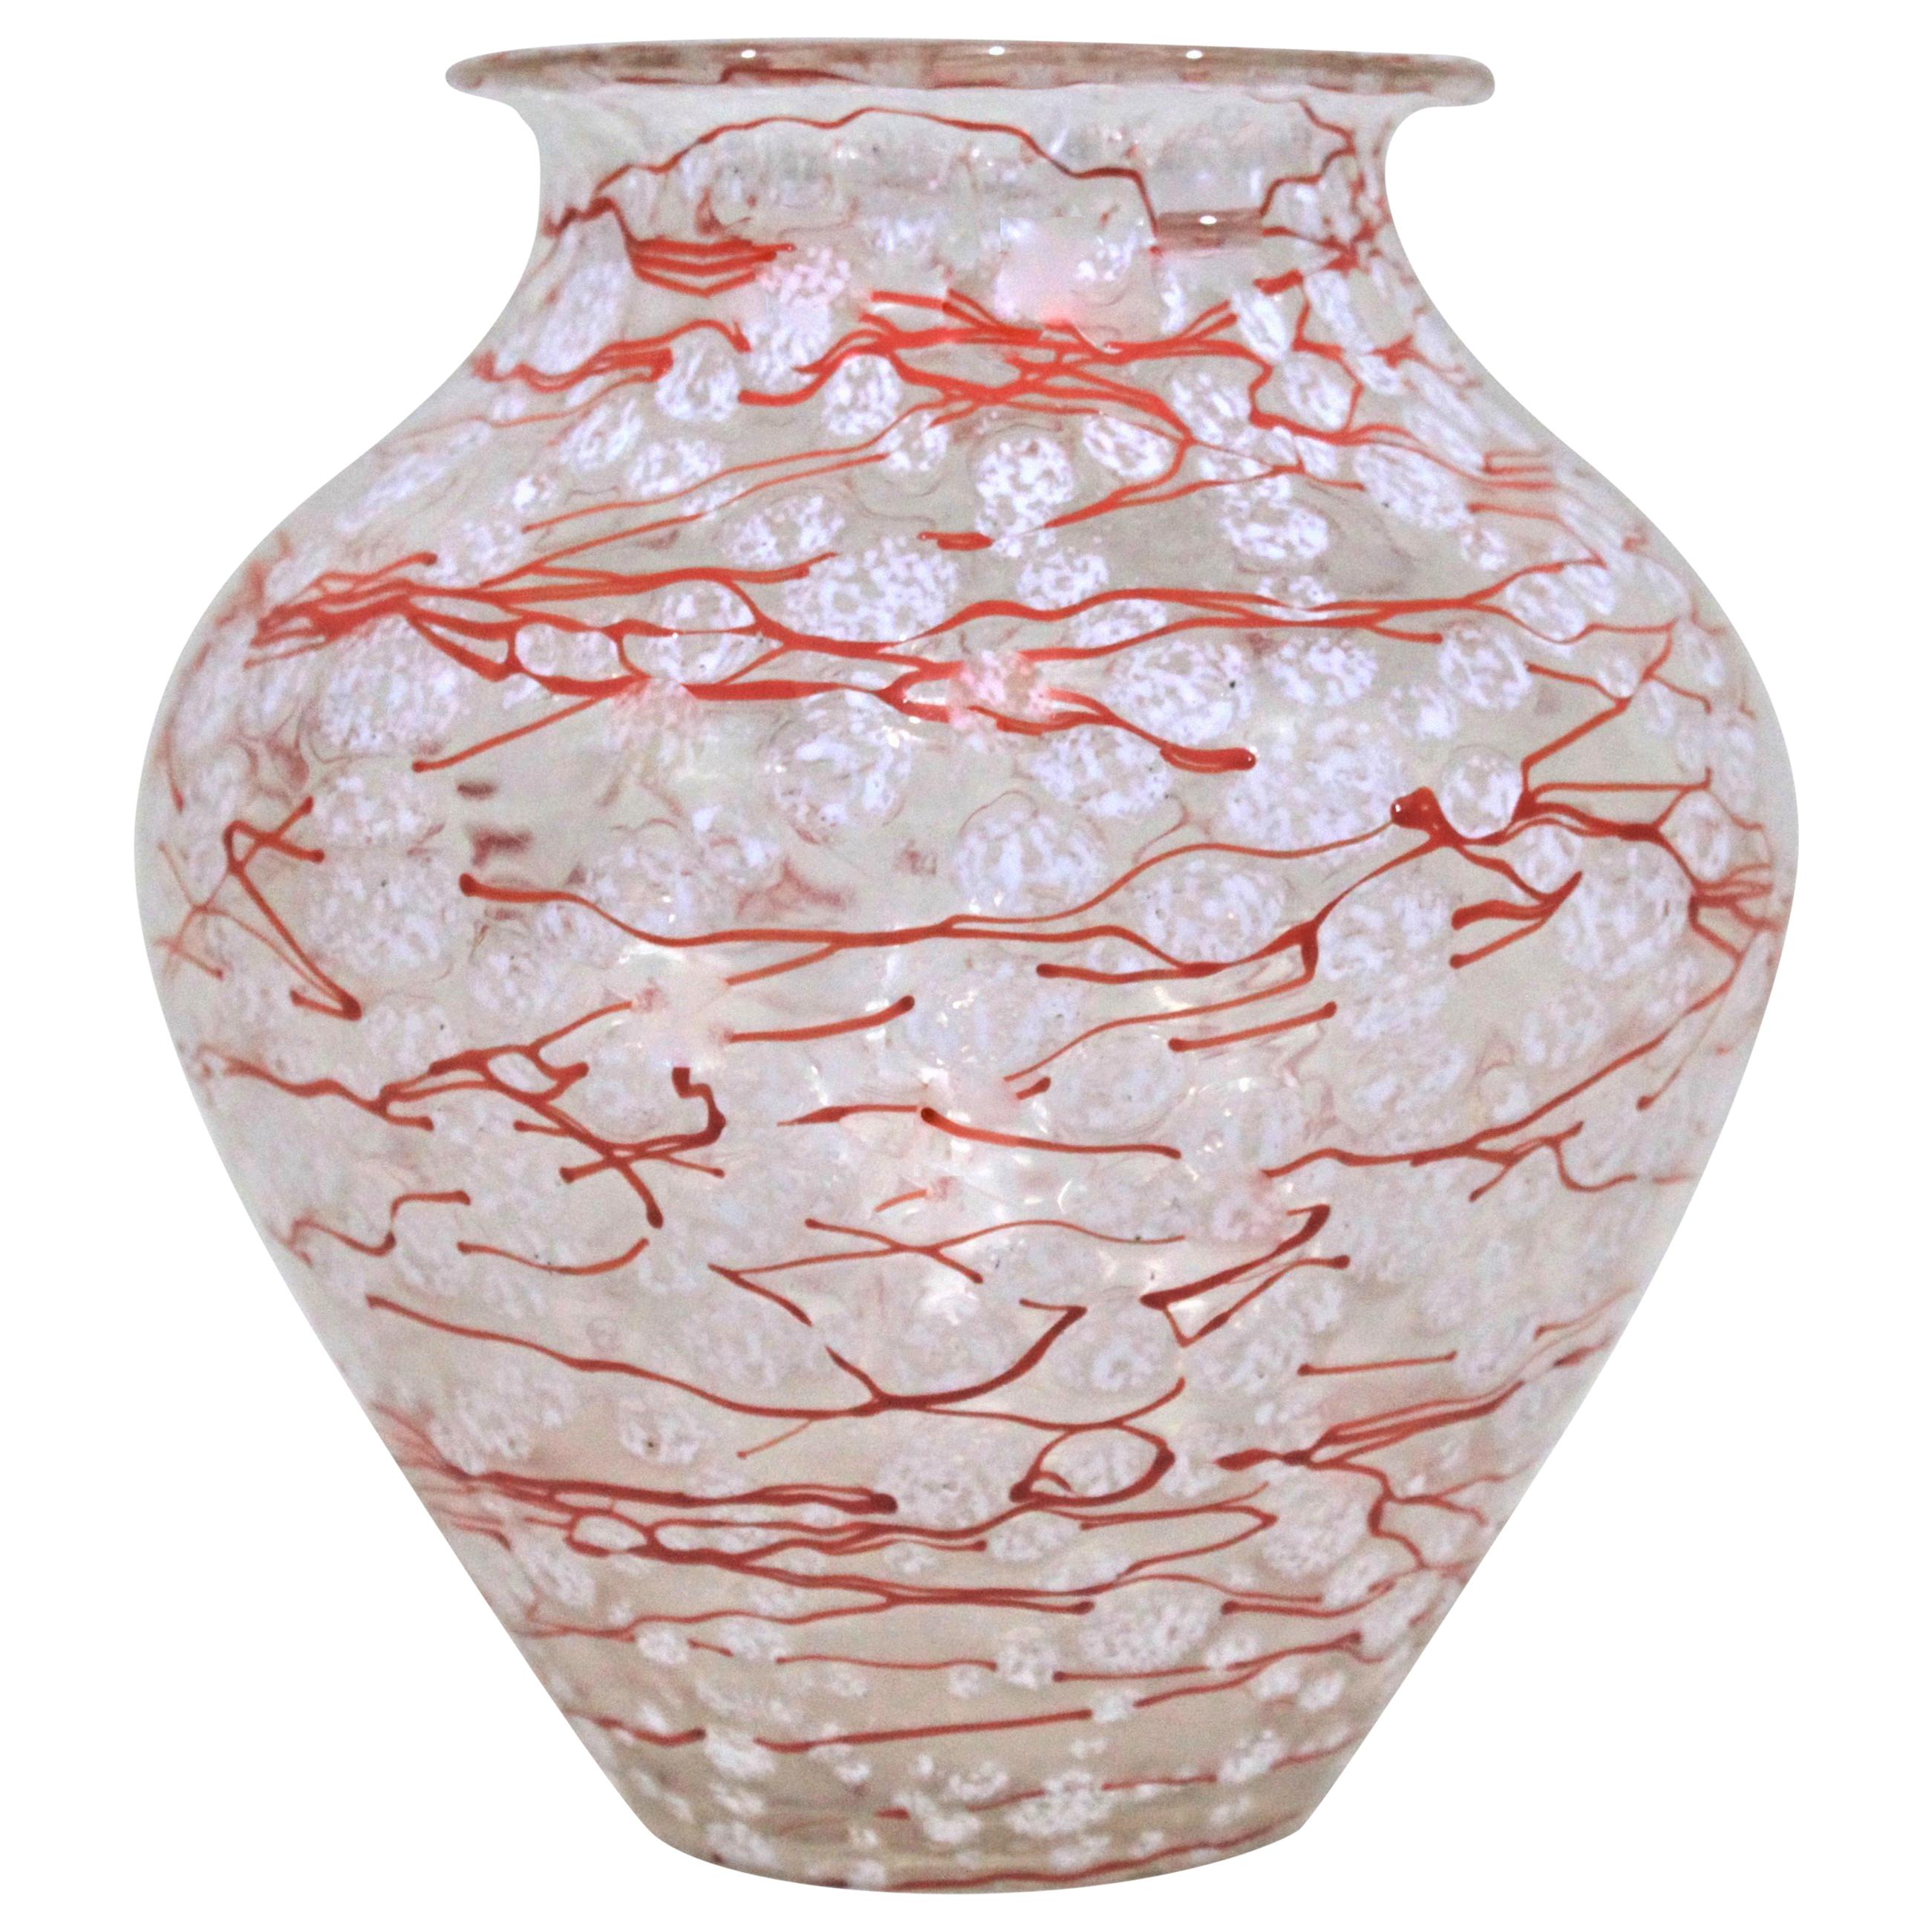 Loetz Ausfuelrung C. Schneelflocken Art Glass Snowflakes Vase